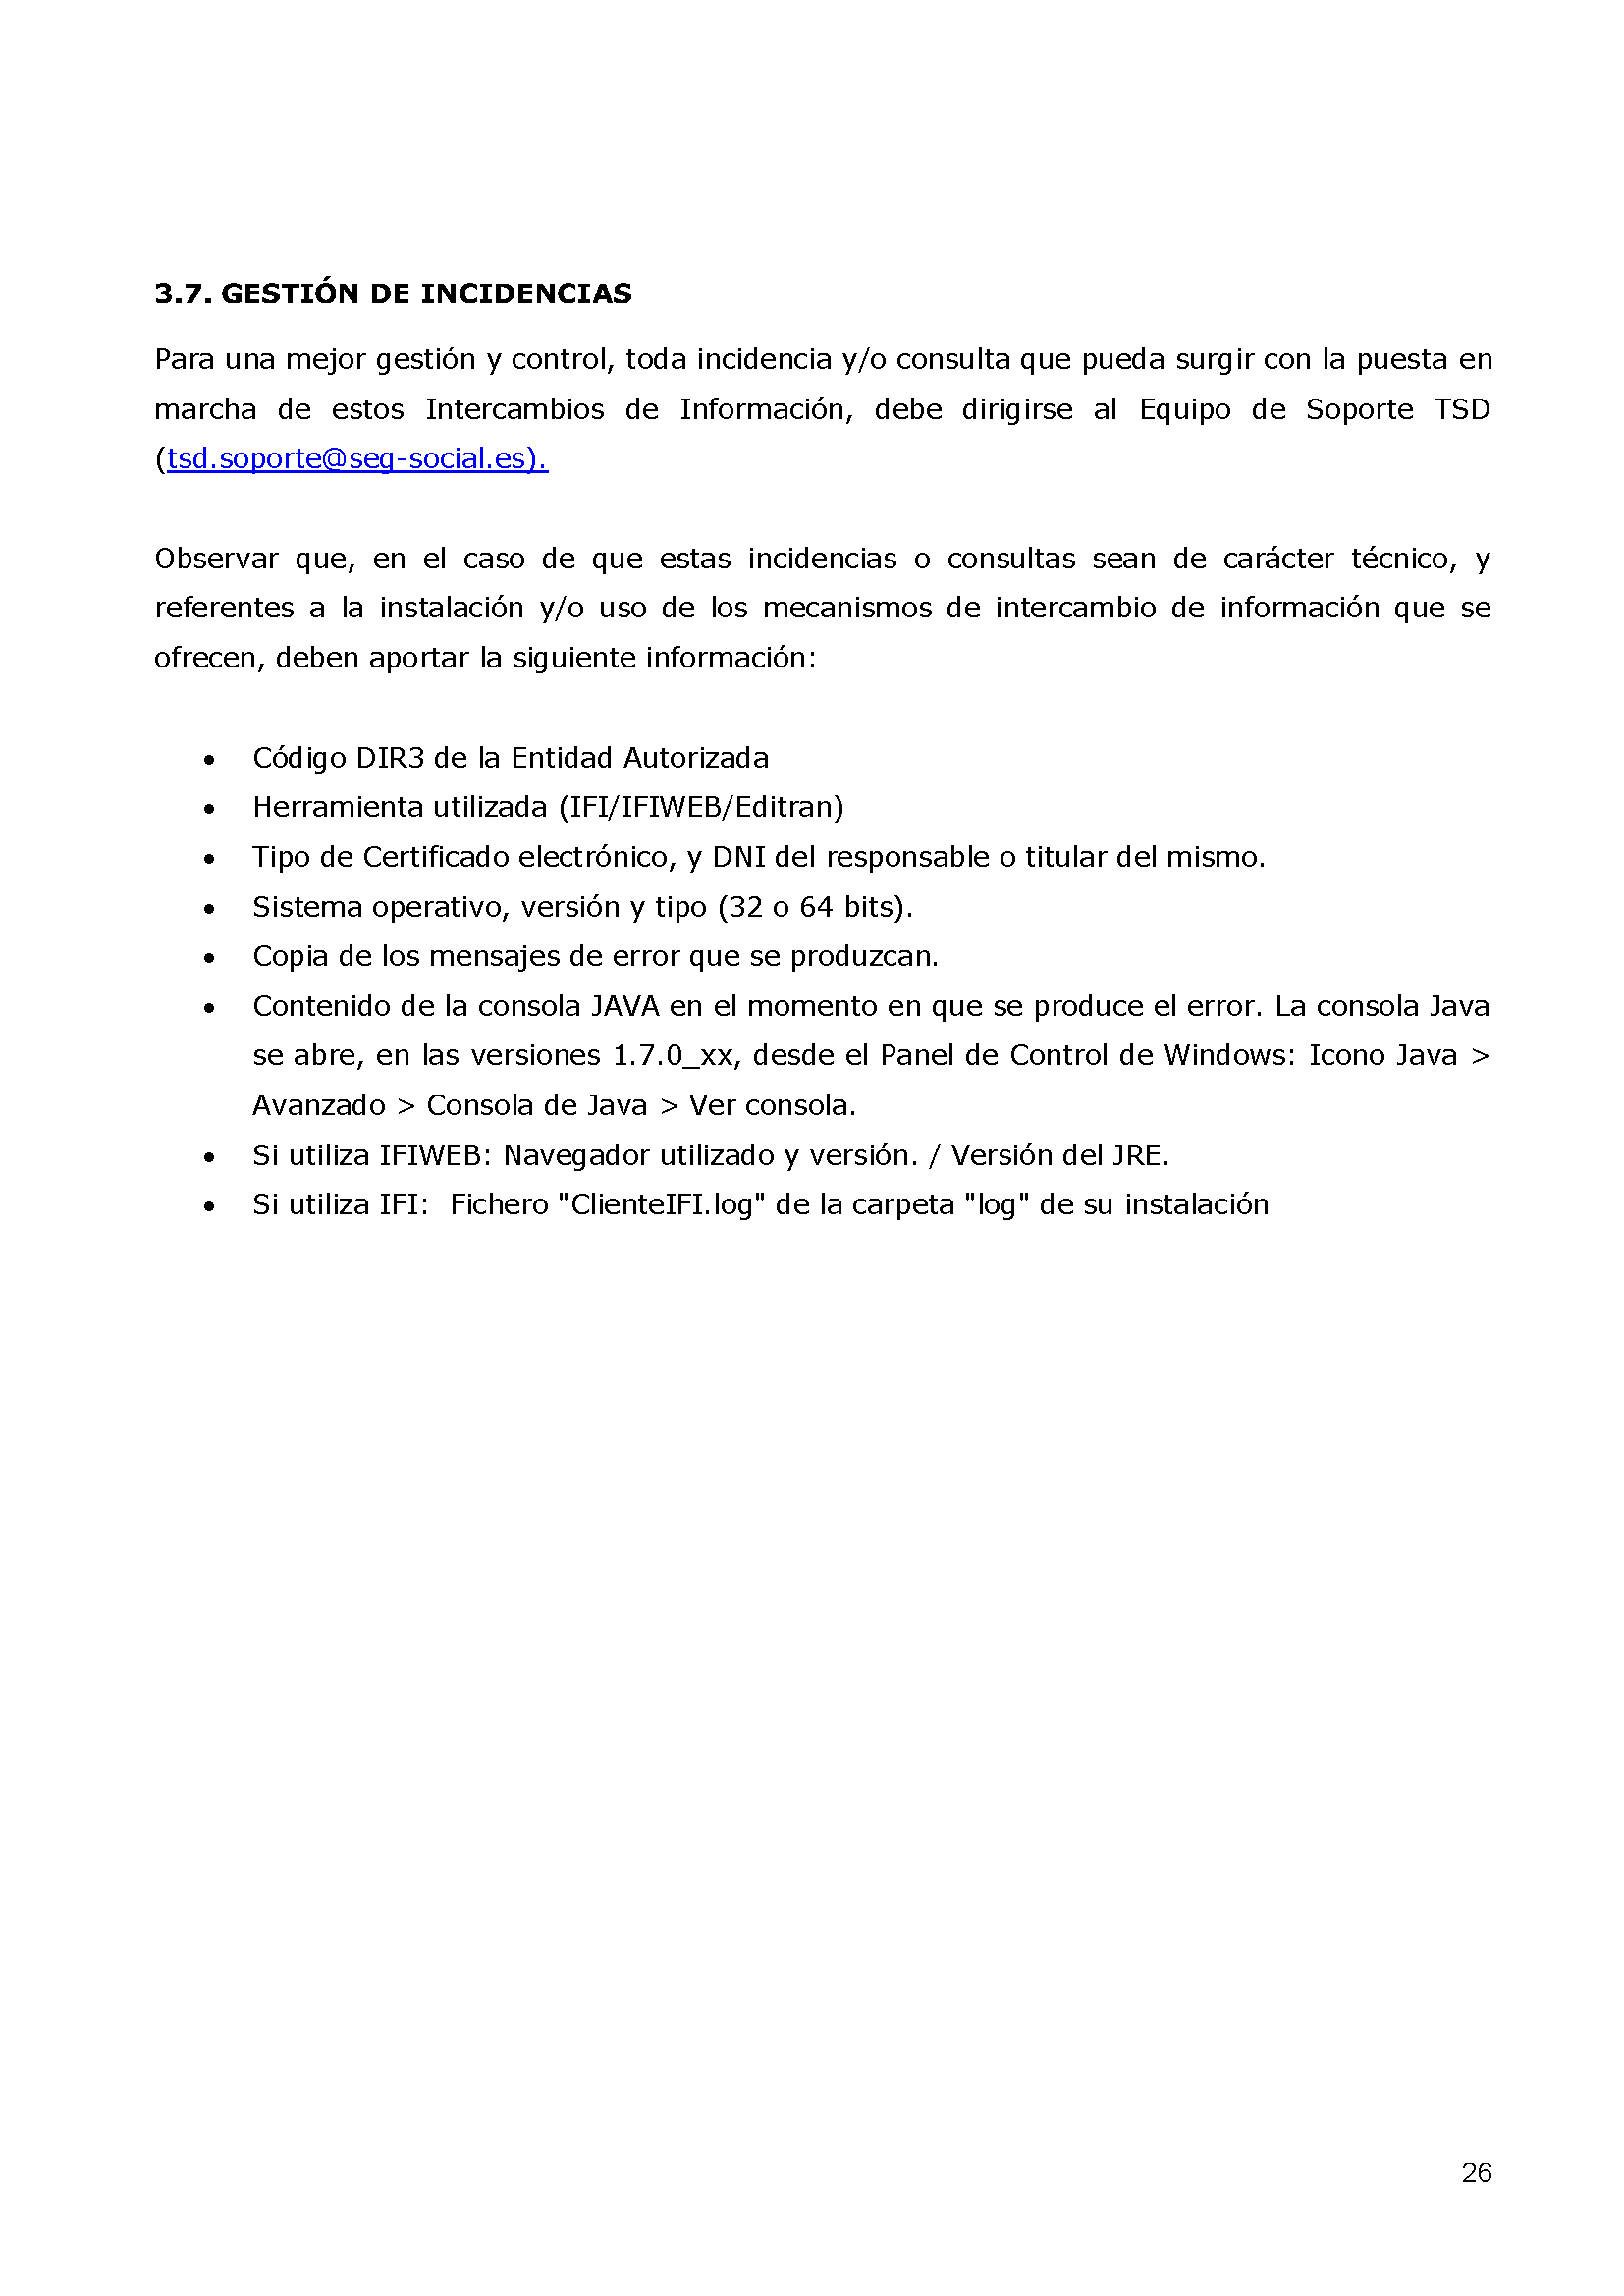 ANEXOS PROTOCOLO DE INTERCAMBIO DE FICHEROS PARA LA CARGA DE DATOS EN TARJETA SOCIAL DIGITAL Pag 26